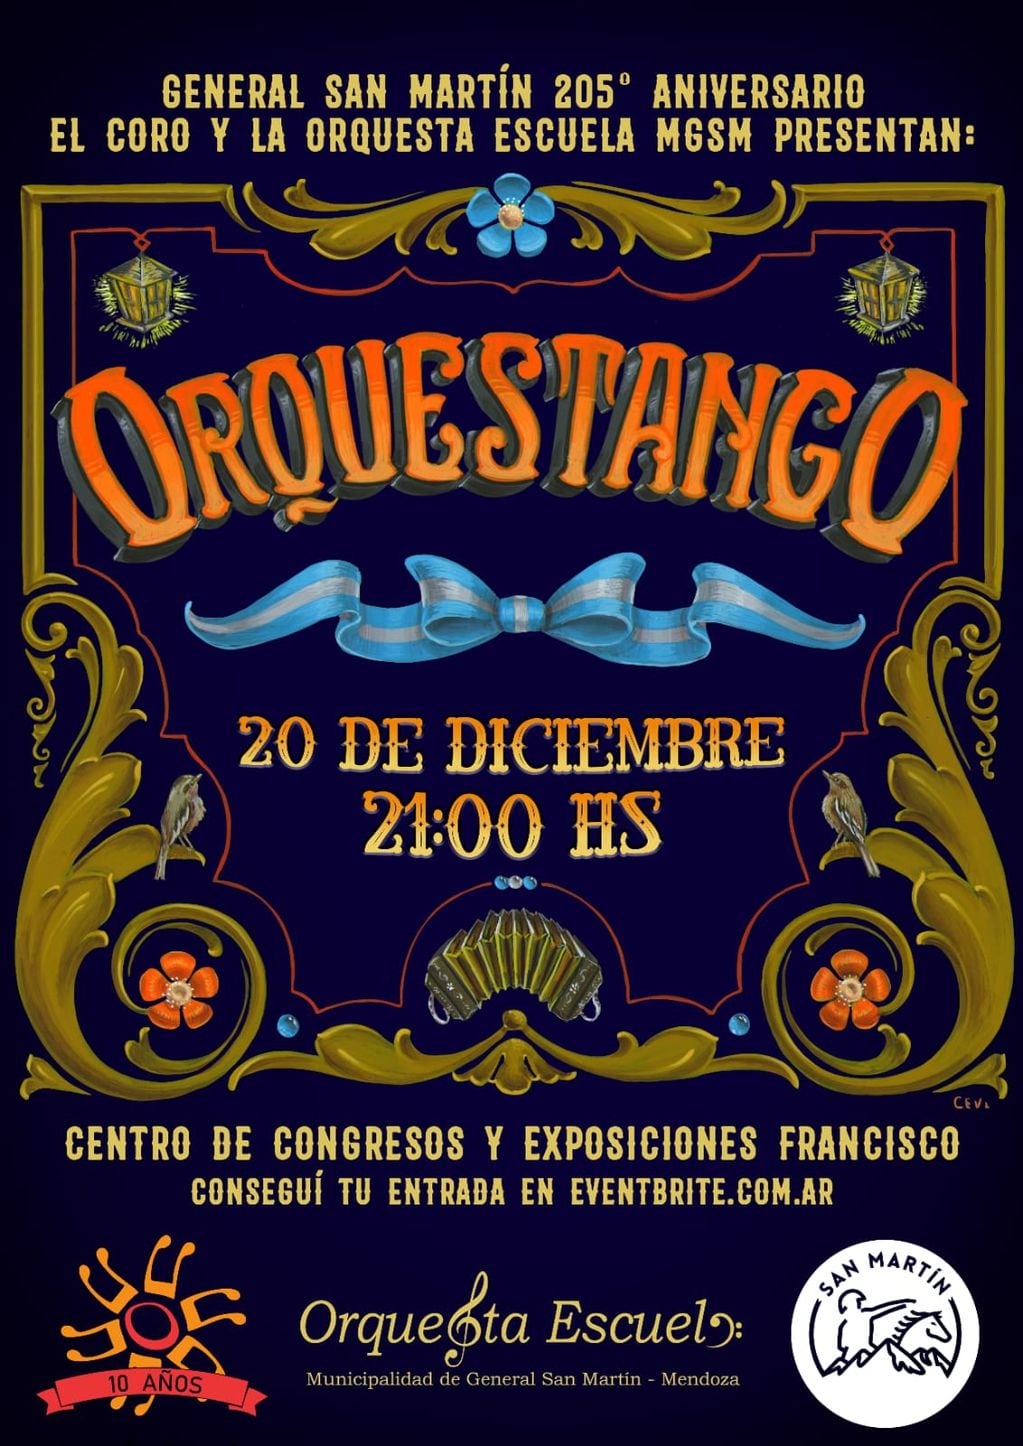 El show será el próximo 20 de diciembre en el Centro de Congresos y Exposiciones Francisco.